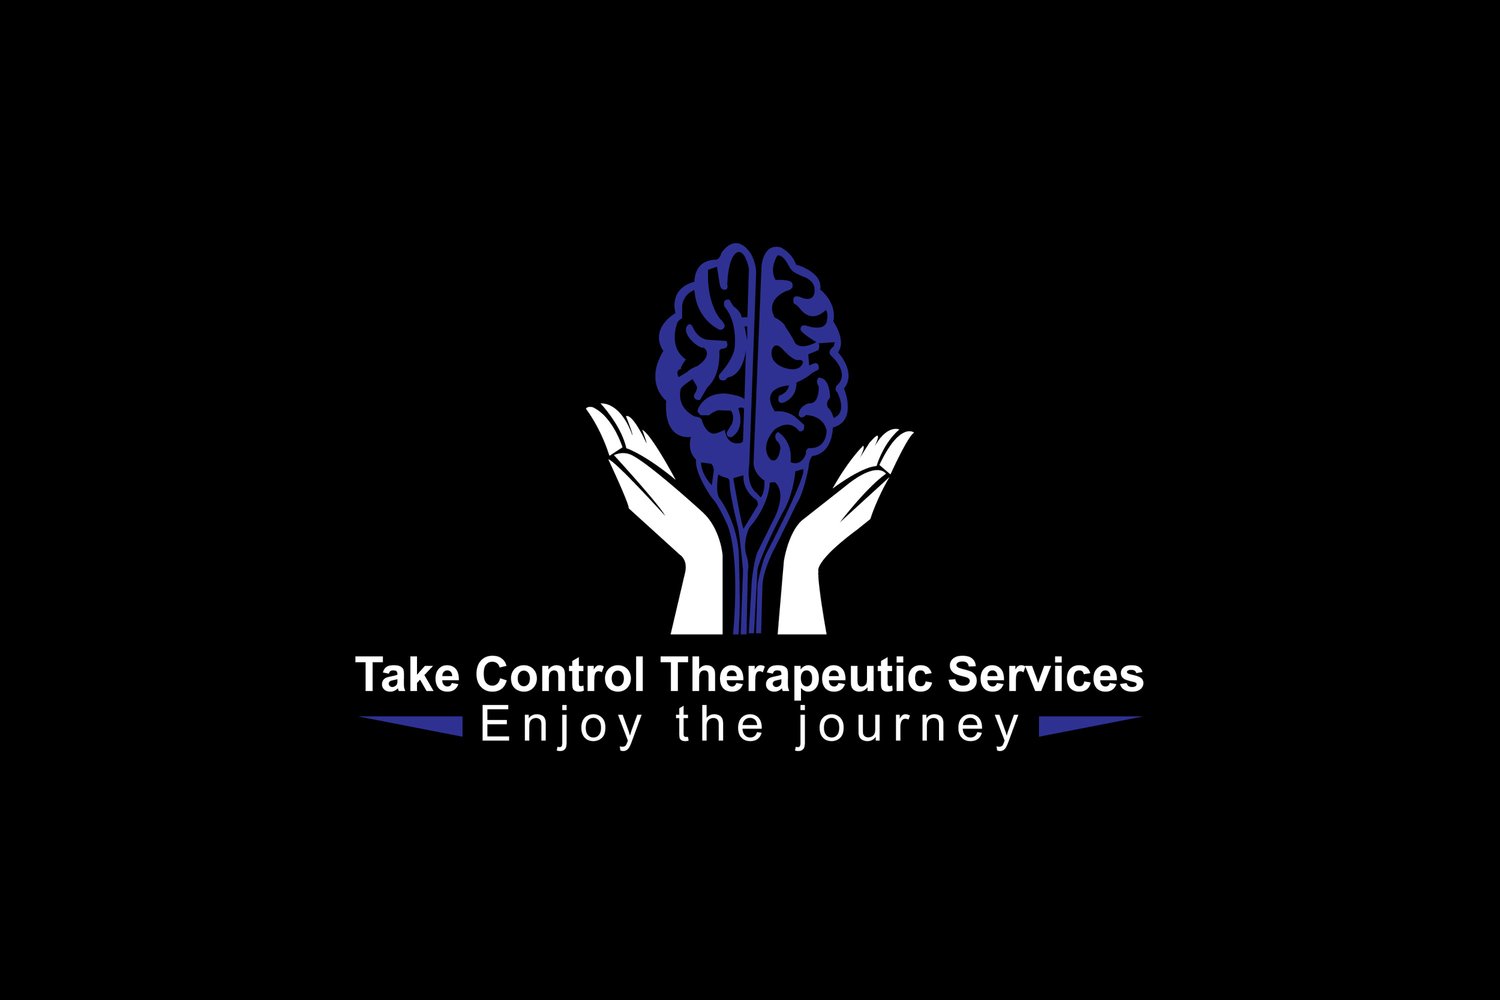 Take Control Therapeutic Services